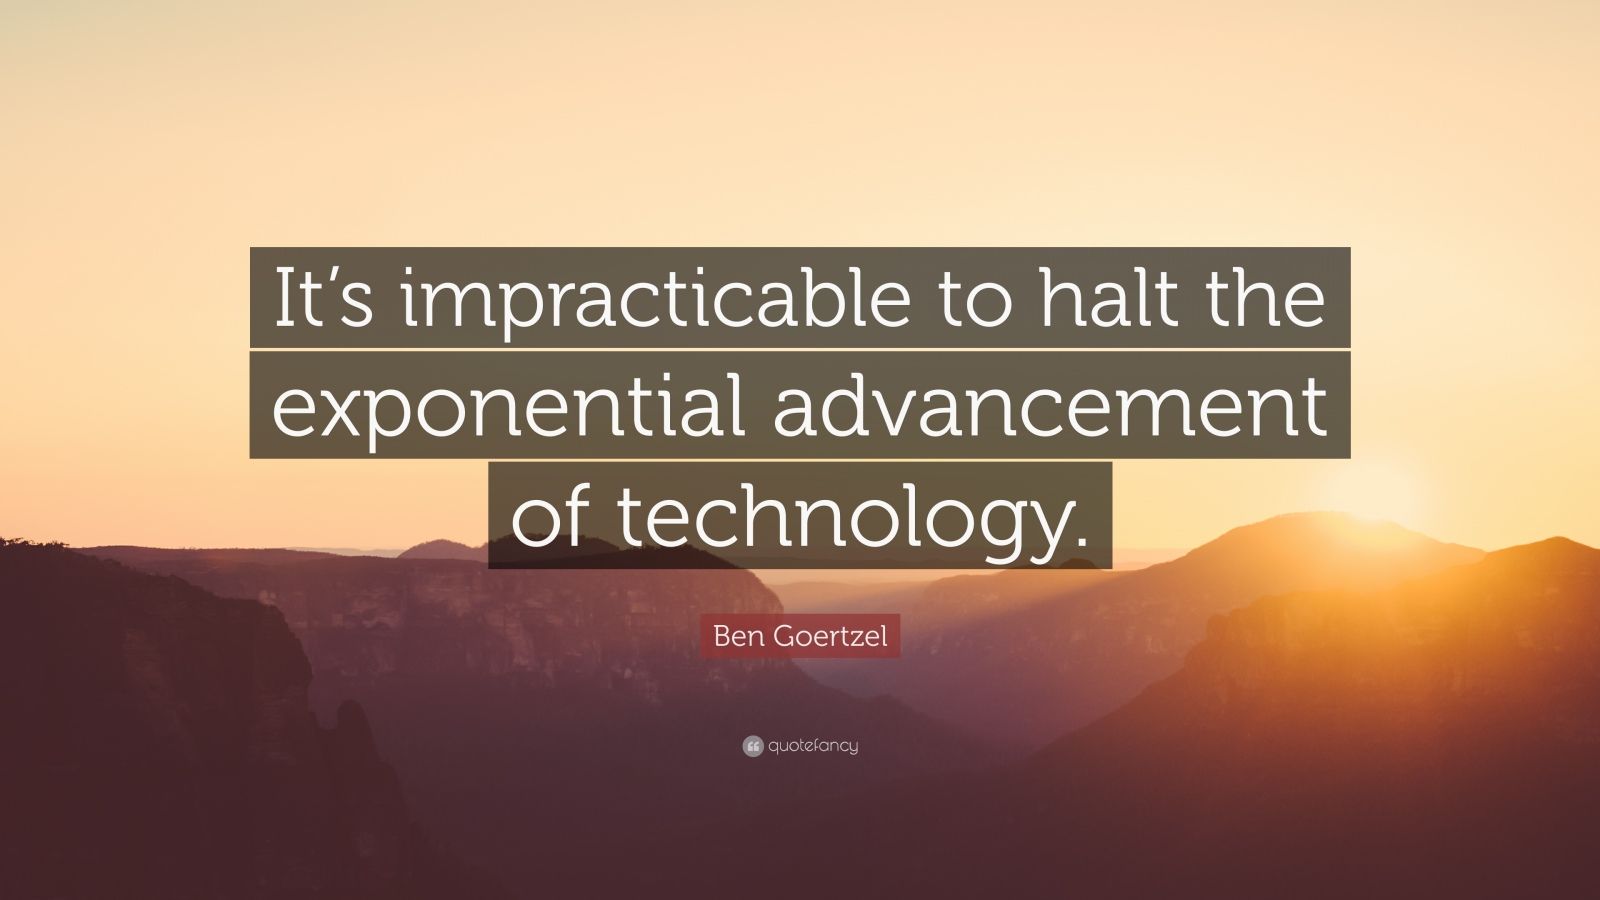 Ben Goertzel Quote: “It’s impracticable to halt the exponential ...